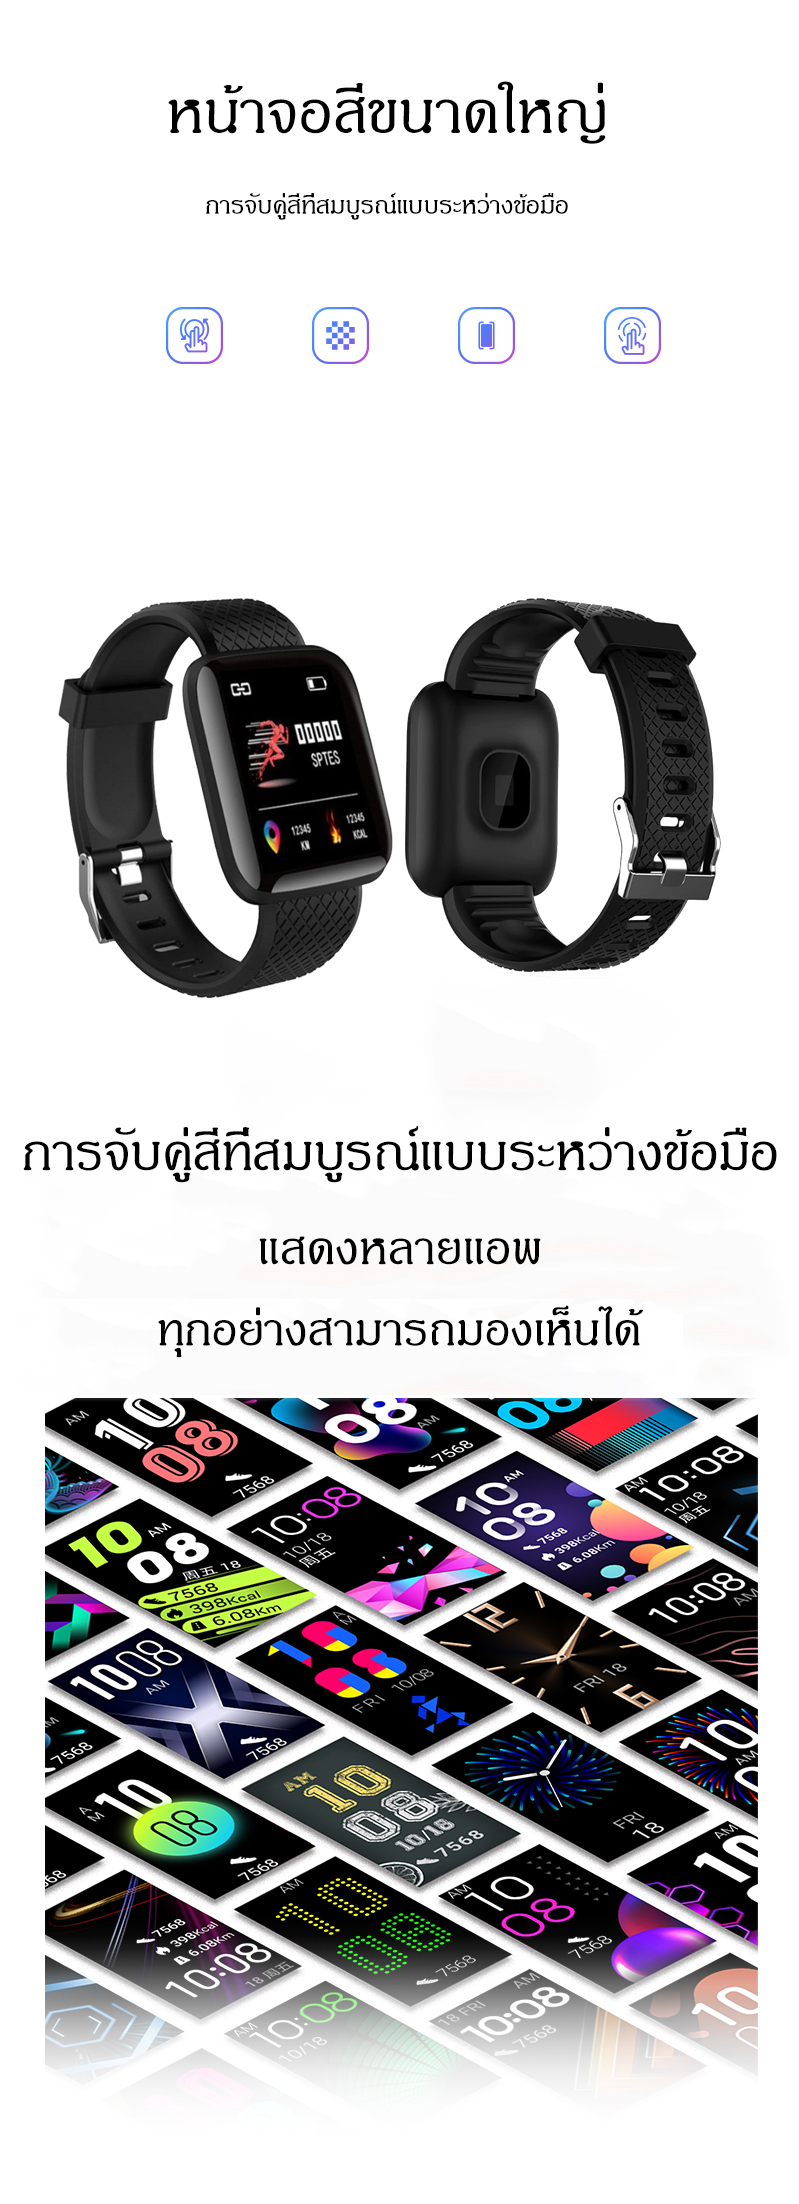 ภาพประกอบคำอธิบาย นาฬิกาโทรศัพท์ Smart Watch สวยงามที่สุด คุ้มราคาที่สุด นาฬิกาออกกำลังกาย Smart GPS Watch (เมนูภาษาไทยครับ) นาฬิกาข้อมืออัจฉริยะออกกำลังกาย waterproof smart watch สร้อยข้อมือสมาร์ทกันน้ำ วัดความดัน วัดหัวใจ นับก้าว